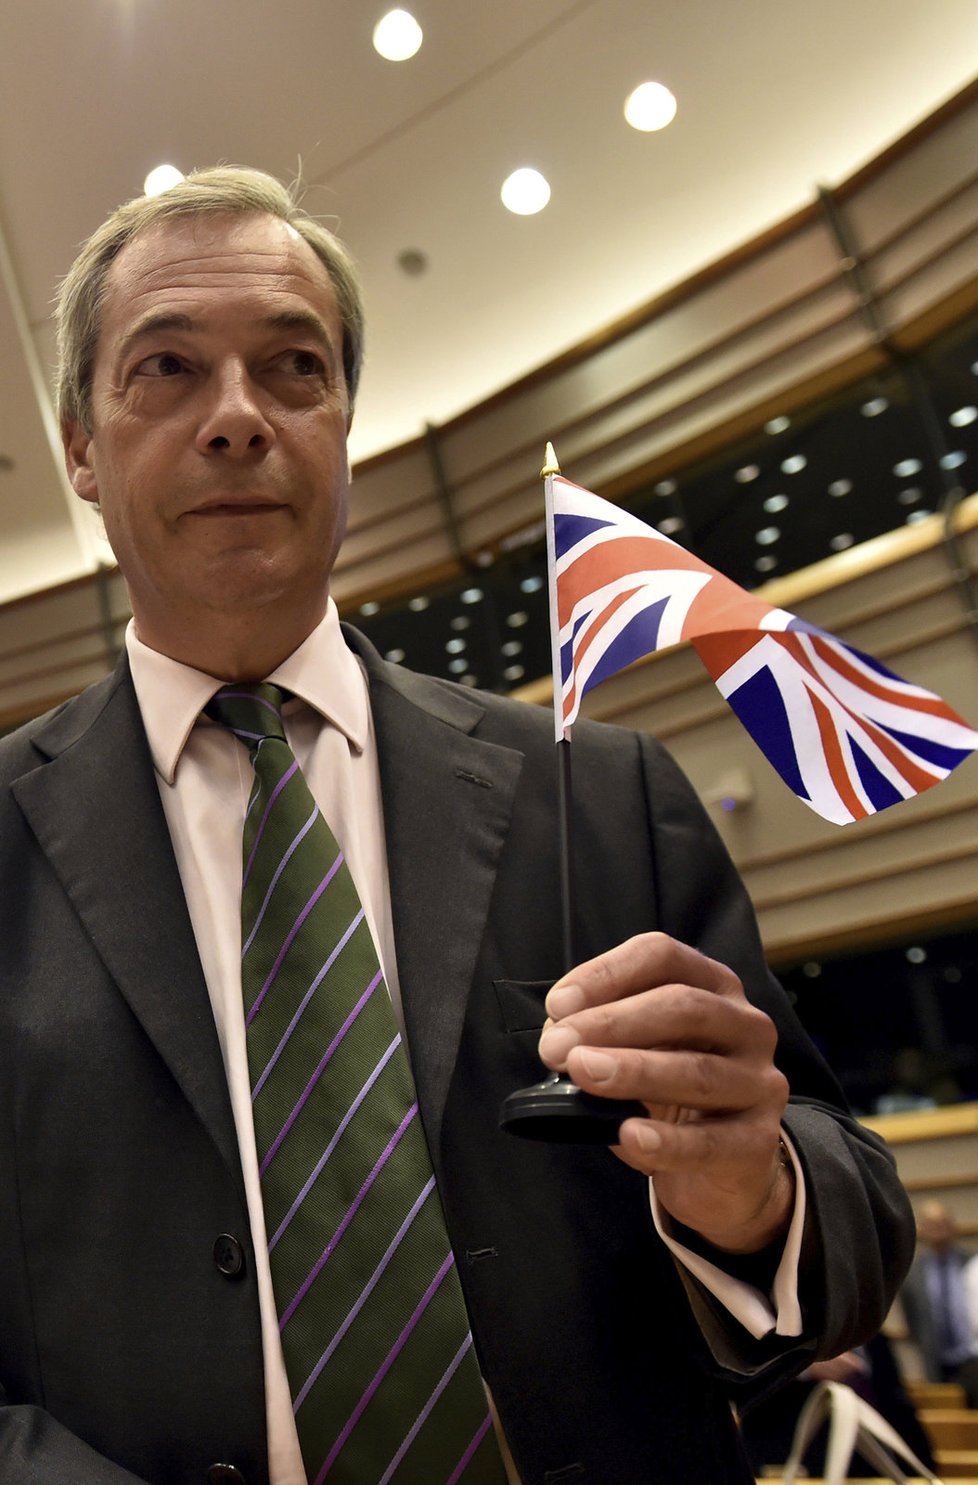 Po brexitu šéf UKIPu Farage ve vedení strany skončil